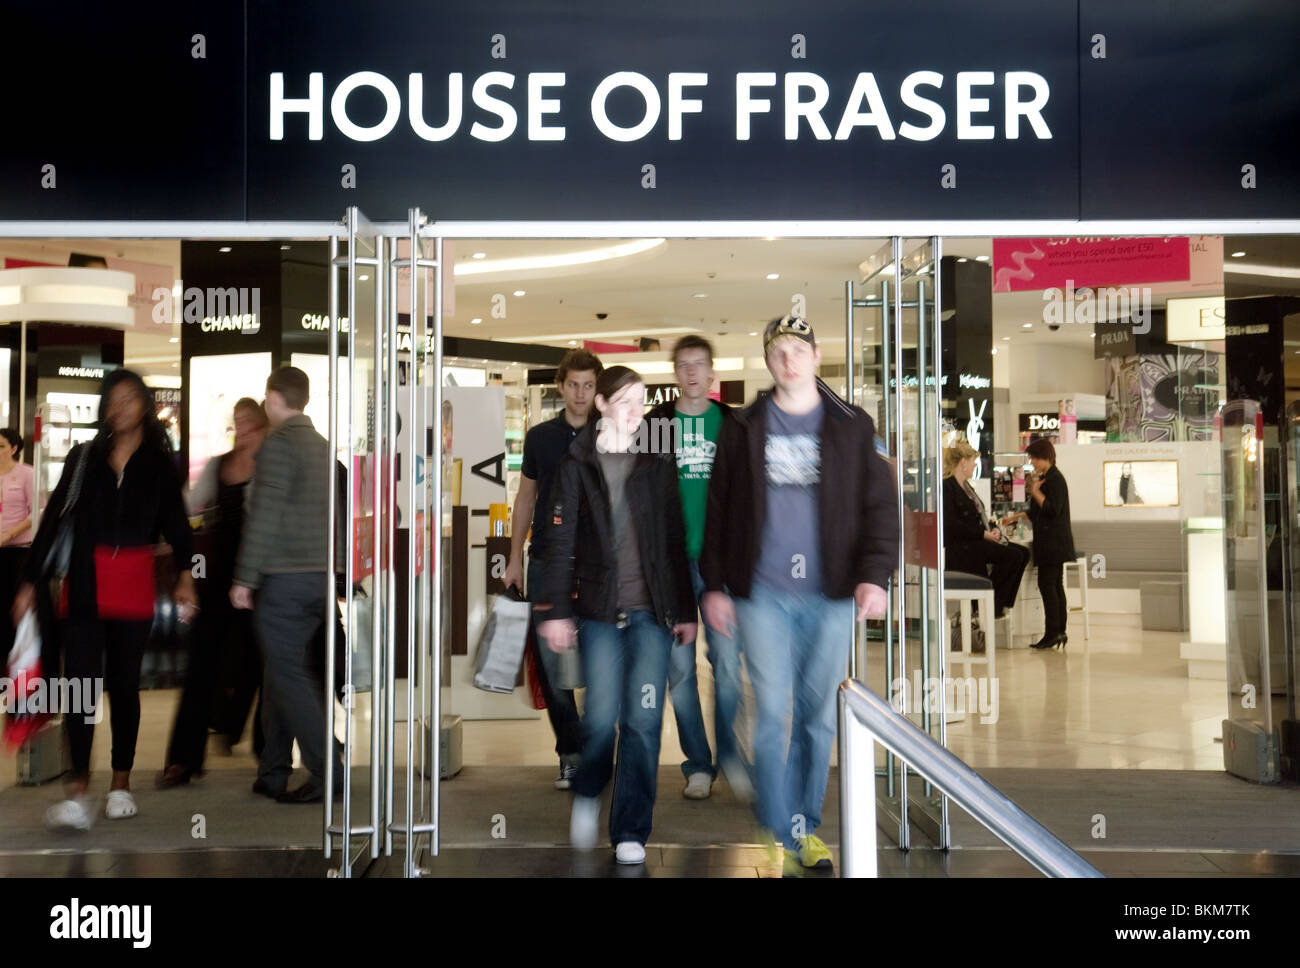 Les acheteurs venant de la maison de Fraser store, Oxford Street, London UK Banque D'Images